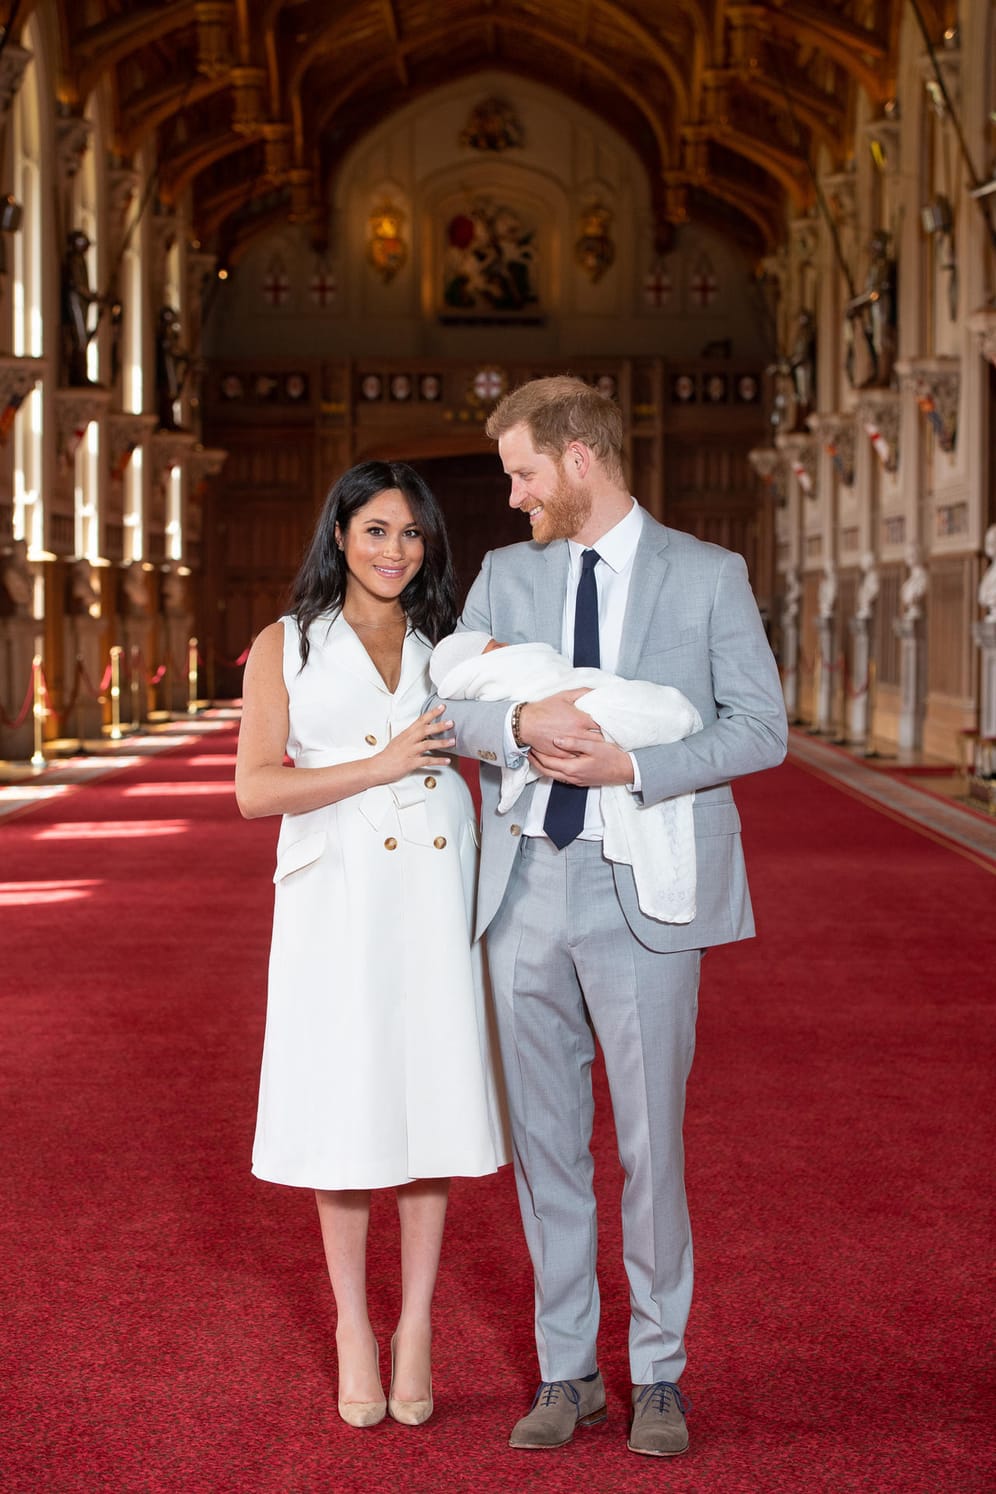 Ein besonderer Moment: Meghan und Harry stellen Sohn Archie der Öffentlichkeit vor – zwei Tage nach seiner Geburt am 6. Mai.